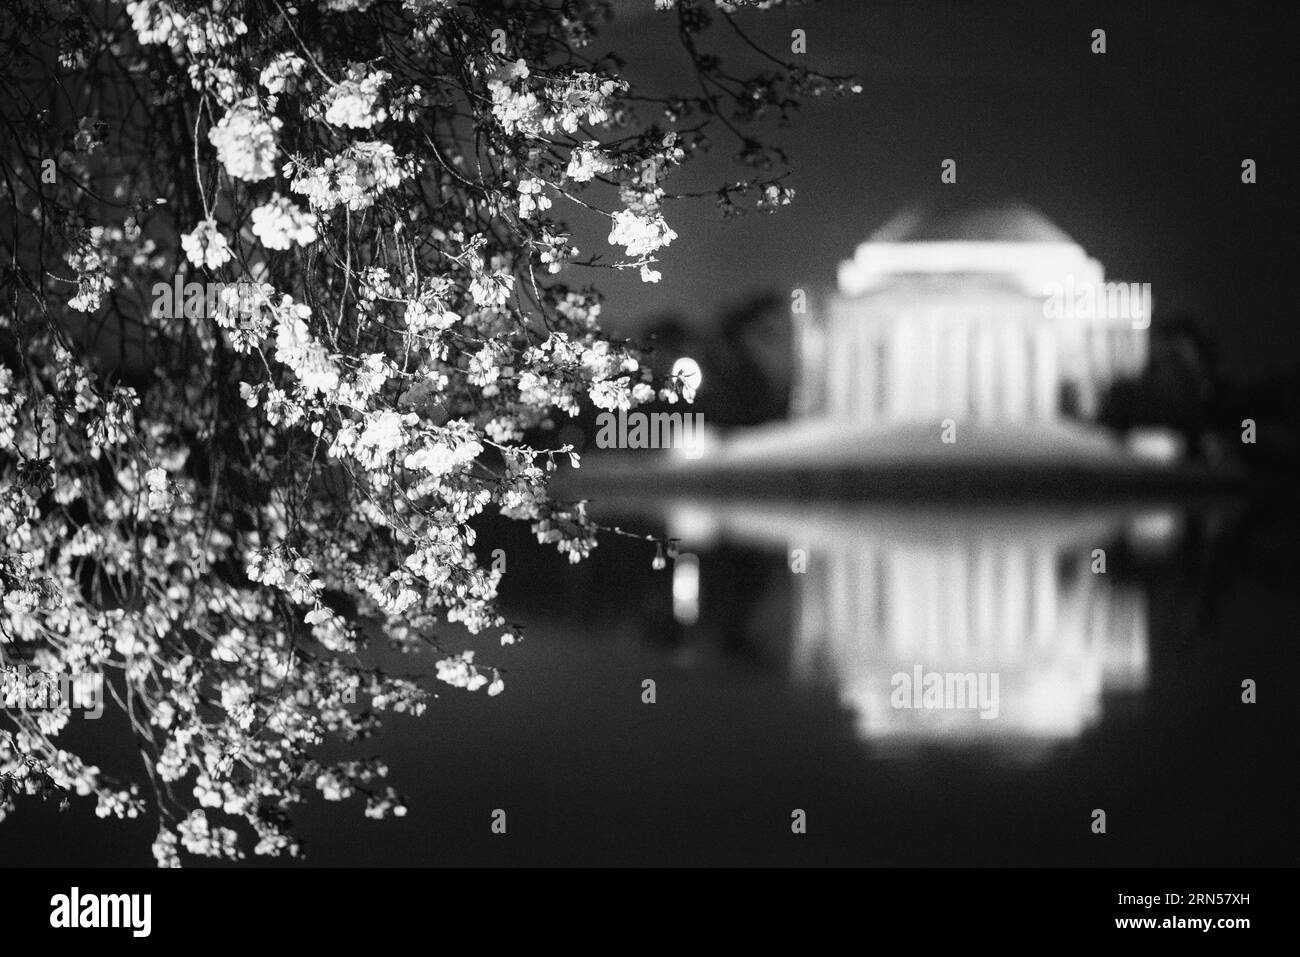 WASHINGTON DC, États-Unis — le Jefferson Memorial est entouré de fleurs de cerisier vibrantes, marquant l'arrivée du printemps dans la capitale. Ces fleurs, un cadeau du Japon en 1912, offrent un cadre pittoresque au mémorial dédié au troisième président américain, Thomas Jefferson, soulignant la fusion de la beauté naturelle et de l'histoire américaine. Banque D'Images